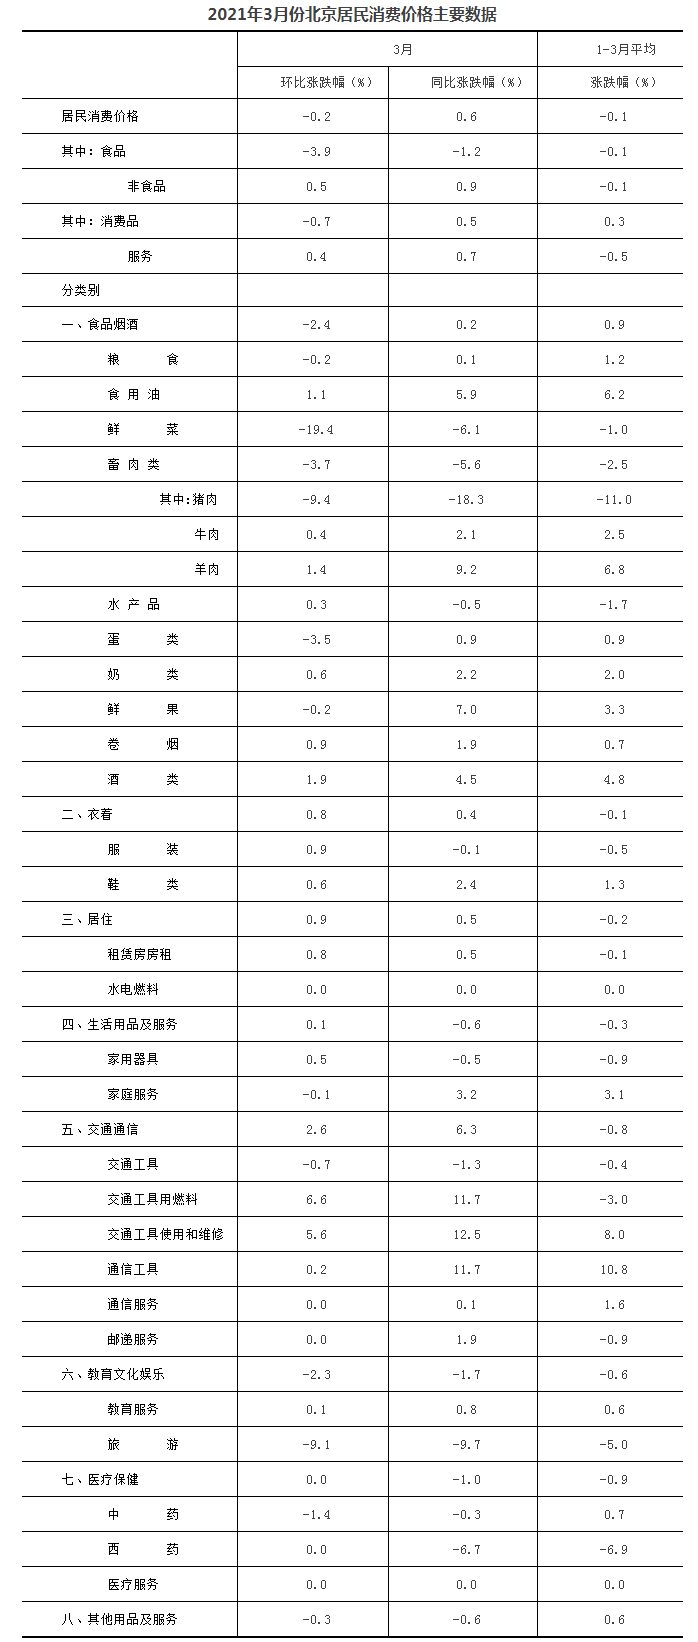 2021年3月份北京居民消费价格主要数据